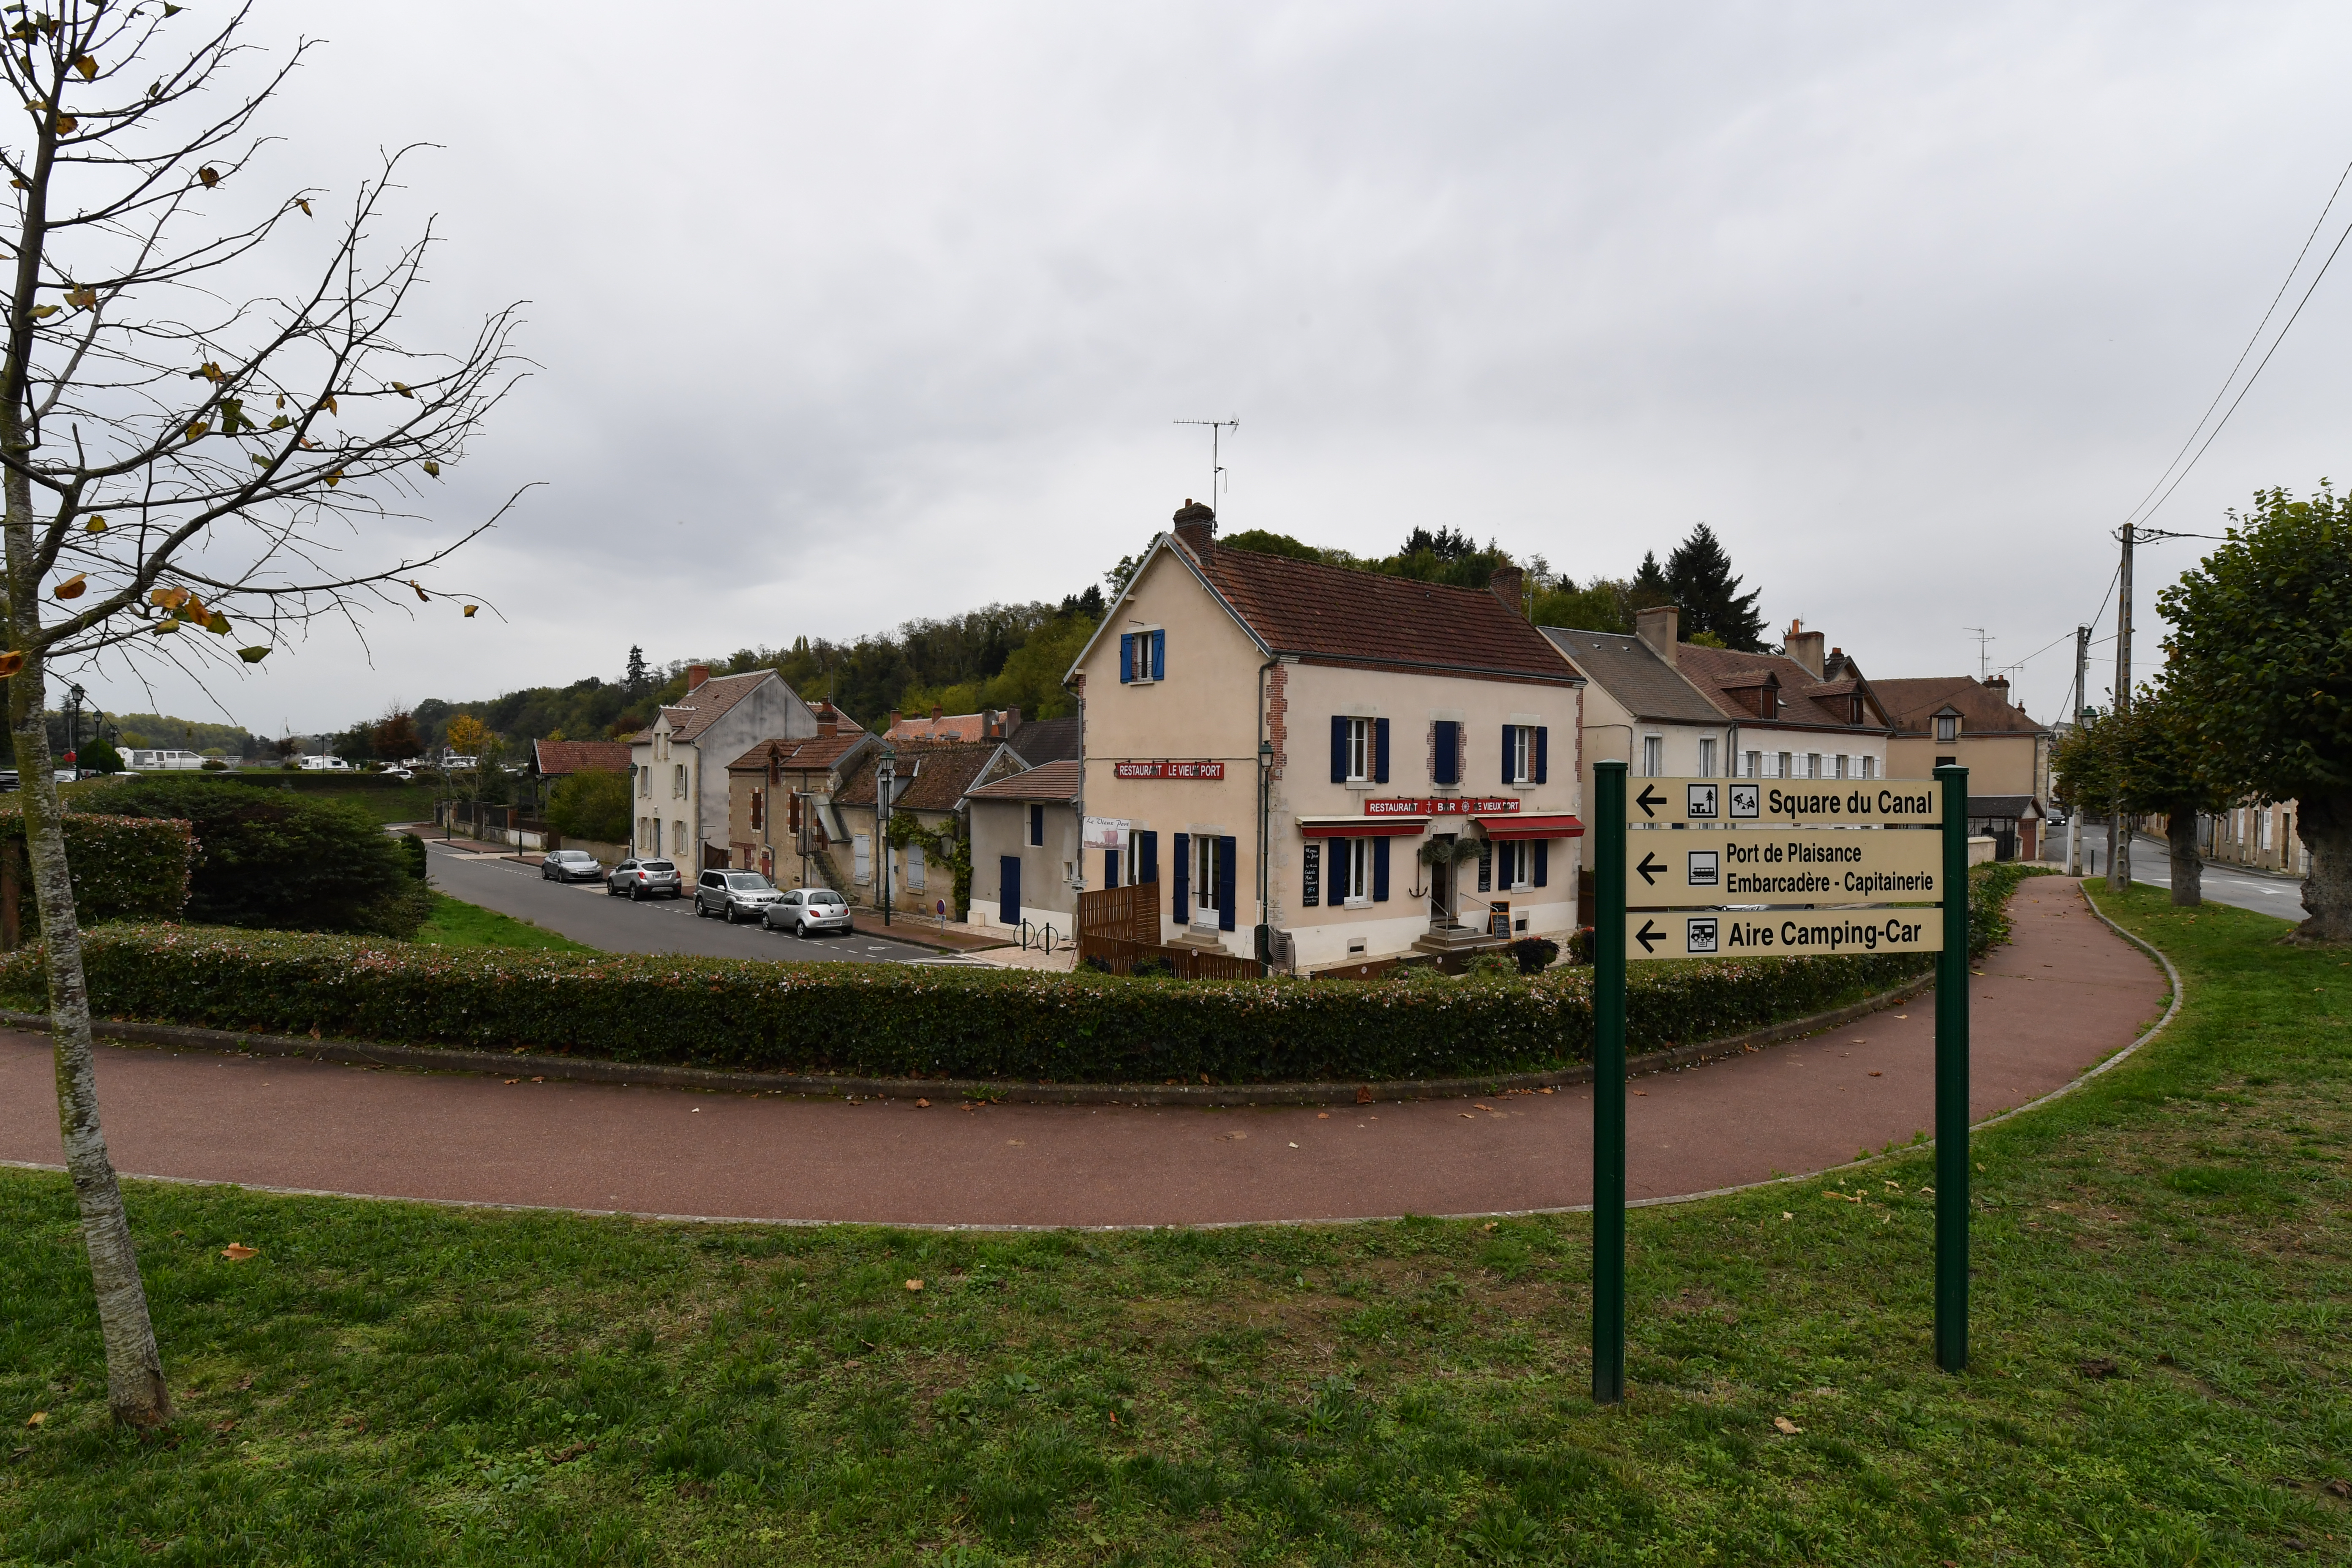 A VENDRE

FONDS ET MURS
RESTAURANT LE VIEUX PORT
CHÂTILLON-SUR-LOIRE (Loiret) ouvert depuis 2003.

A 1h30 de Paris, à Châtillon-sur-Loire (10 minutes de Briare et de son pont-canal, 20 minutes de Gien), attenant au port du canal latéral à la Loire et à ses parkings, à 5 minutes à pied de la Loire et de l’écluse de Mantelot, ainsi que du centre bourg et de ses commerces. 

Maison sur 4 niveaux- Surface au sol : 126 m2, comprenant : 

Rez-de-chaussée : Espace restaurant entièrement rénové et équipé, comprenant un espace bar, une cuisine professionnelle, deux salles accueillant 30 couverts avec un espace réserve, une terrasse extérieure de 30 couverts, un espace toilettes avec change bébé ; une cour intérieure et jardin, terrasse privative avec une annexe réserve, chambre froide et congélateur, deux caves voutées sous l’ensemble du bâtiment.

Appartement à l’étage : 3 chambres, salon, cuisine-salle à manger, salle de bains – toilettes. 

Prix Fonds de Commerce et Murs : 235 k€